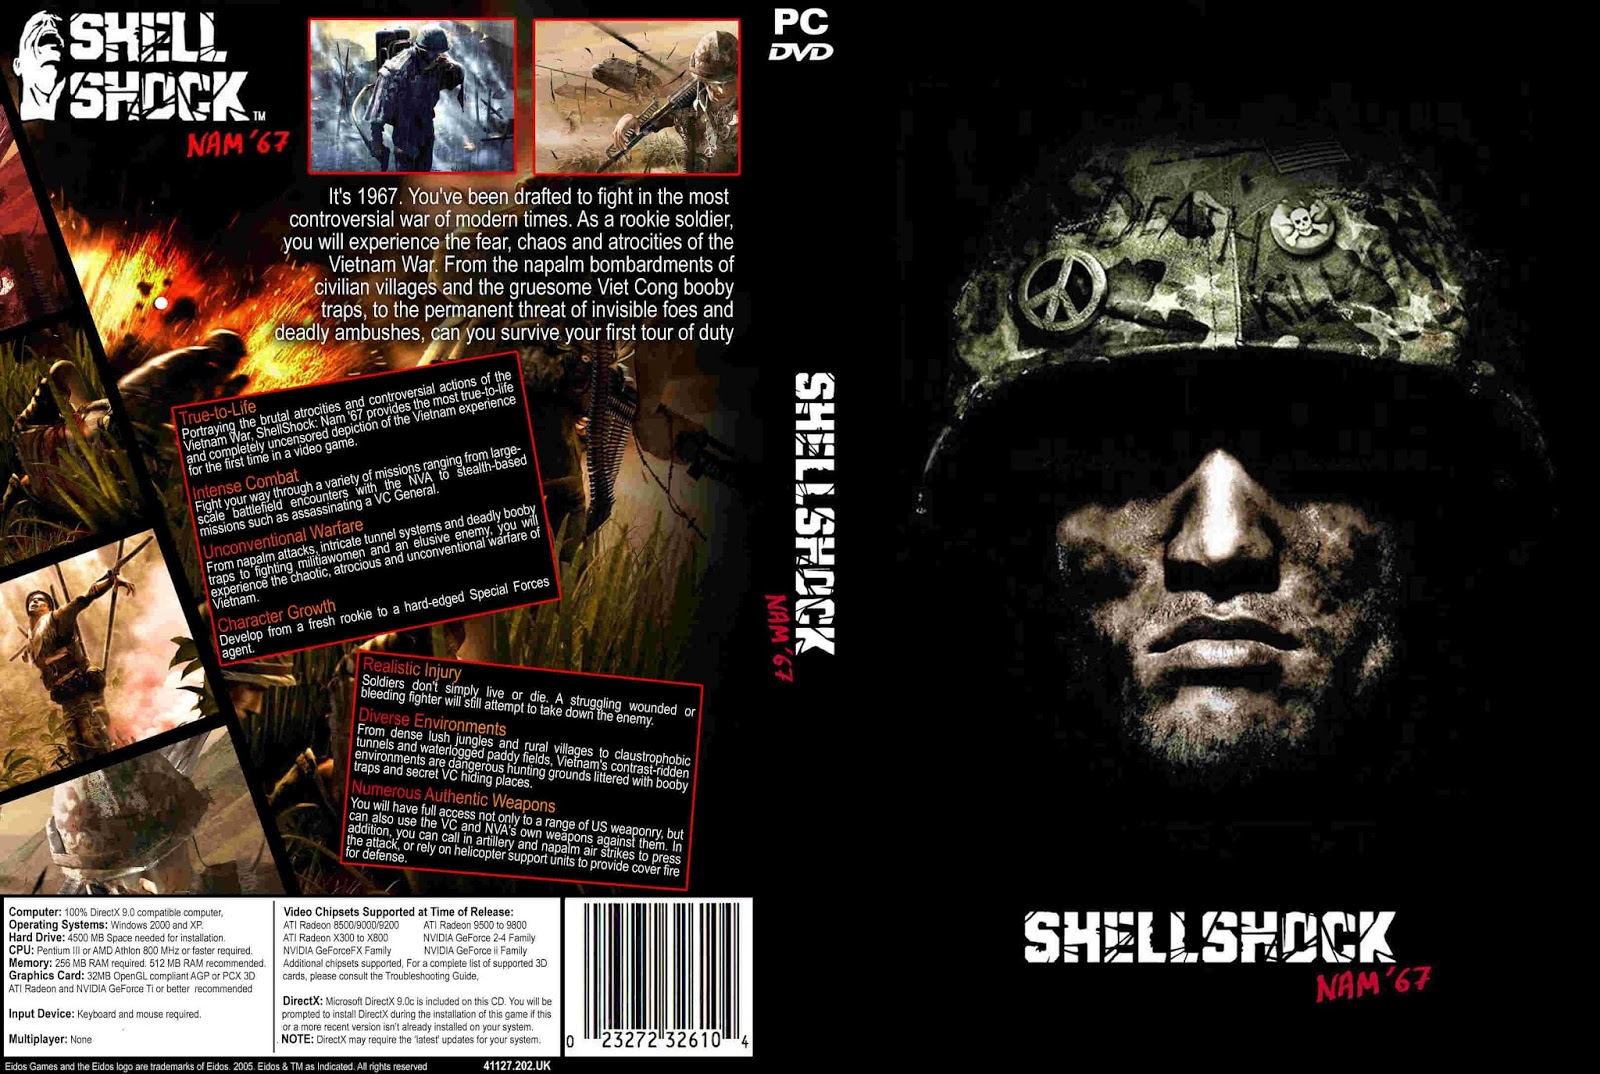 Downloads Titans: Shellshock Nam '67 PS2 ISO NTSC TORRENT